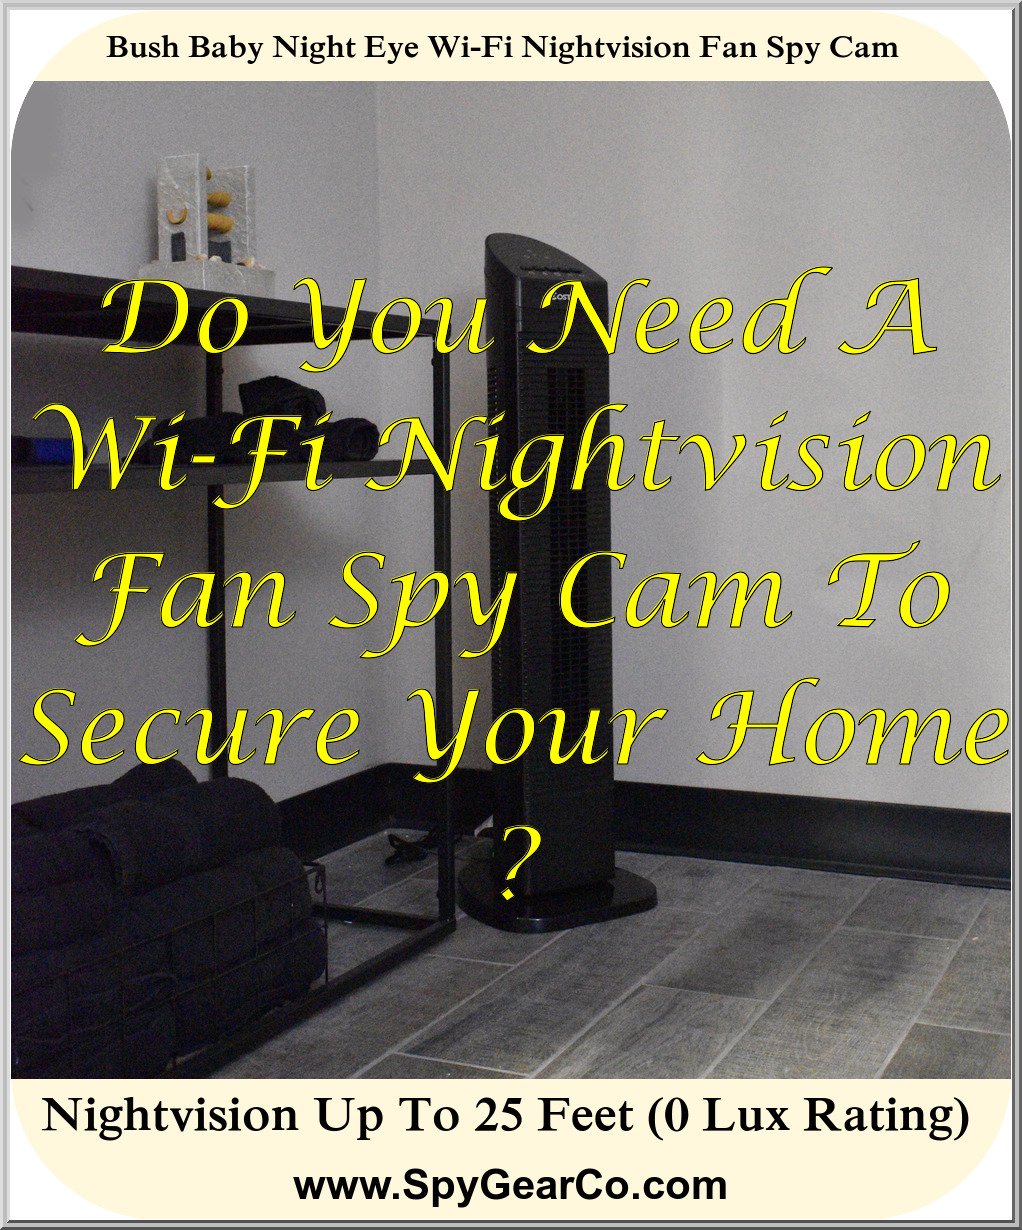 Bush Baby Night Eye Wi-Fi Nightvision Fan Spy Cam